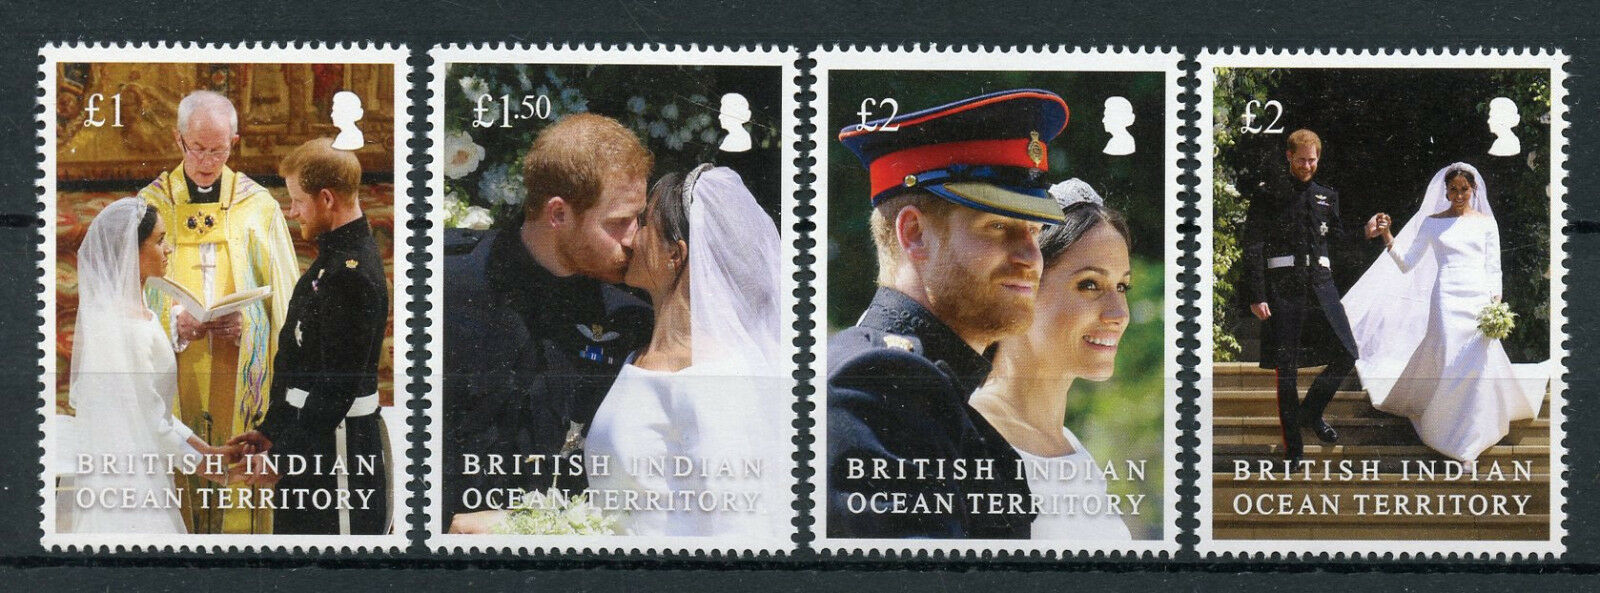 BIOT 2018 MNH Royalty Stamps Prince Harry & Meghan Royal Wedding 4v Set